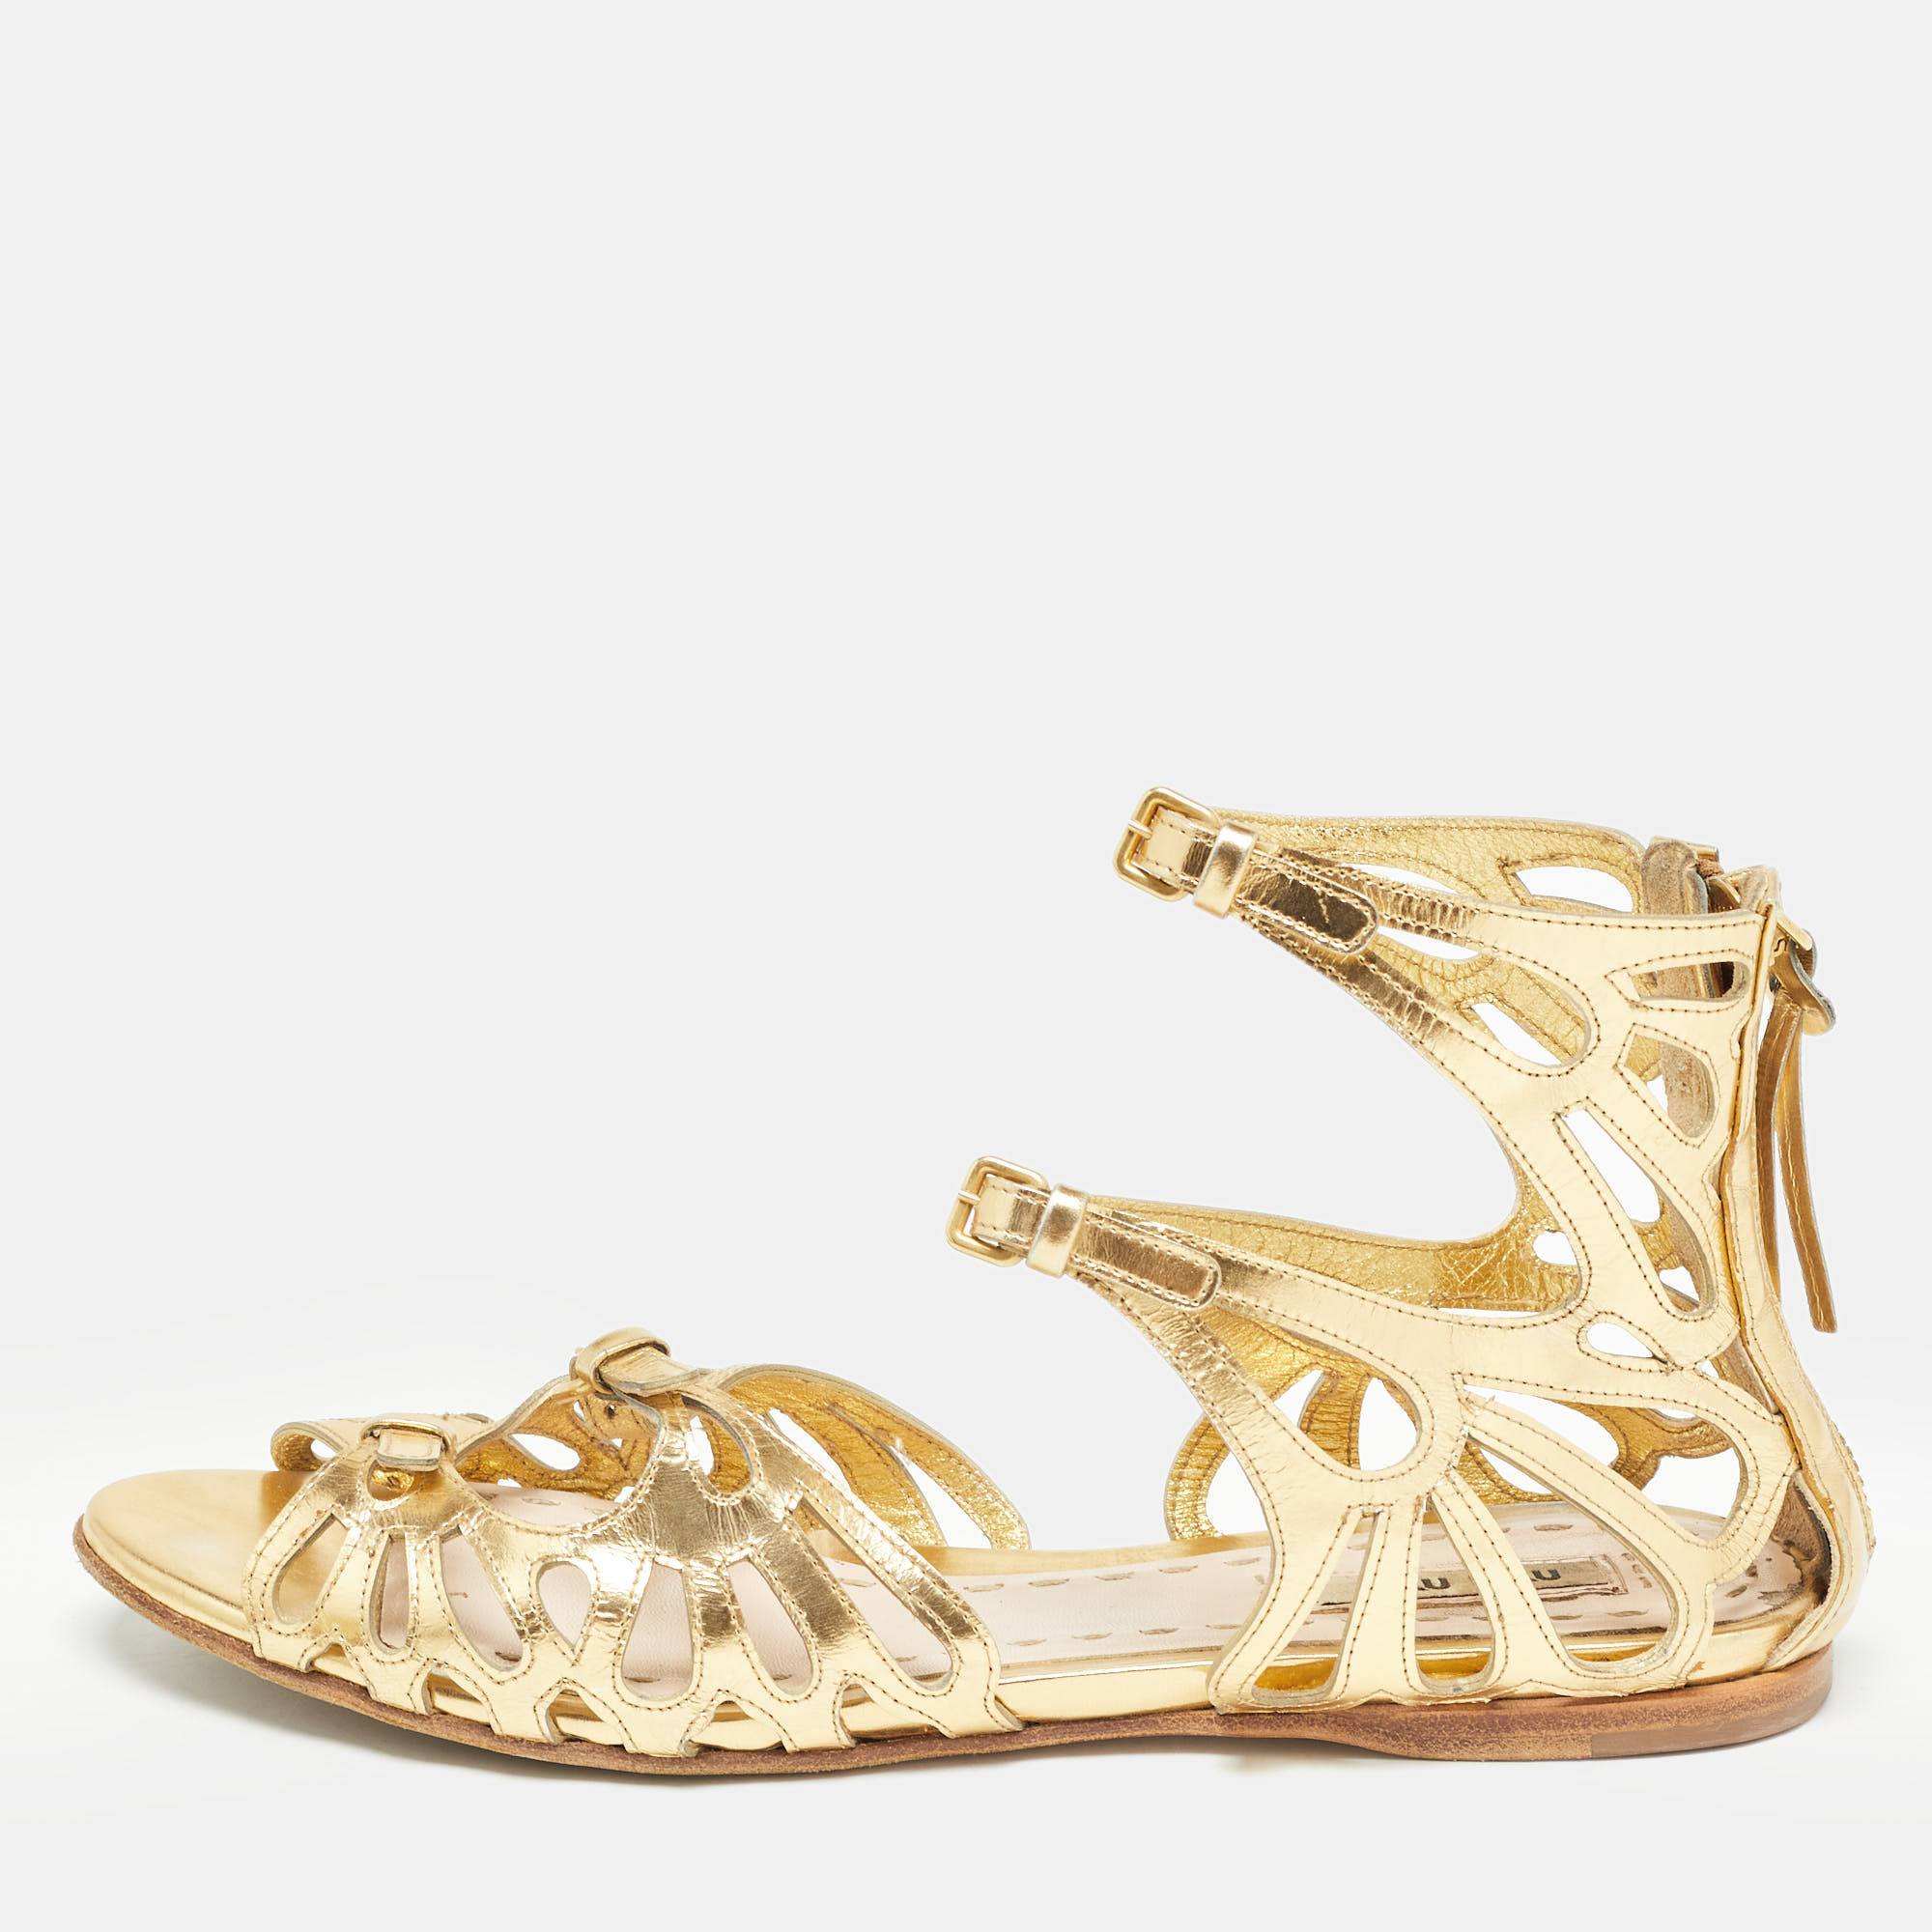 Miu miu gold cut out leather flat sandals size 36